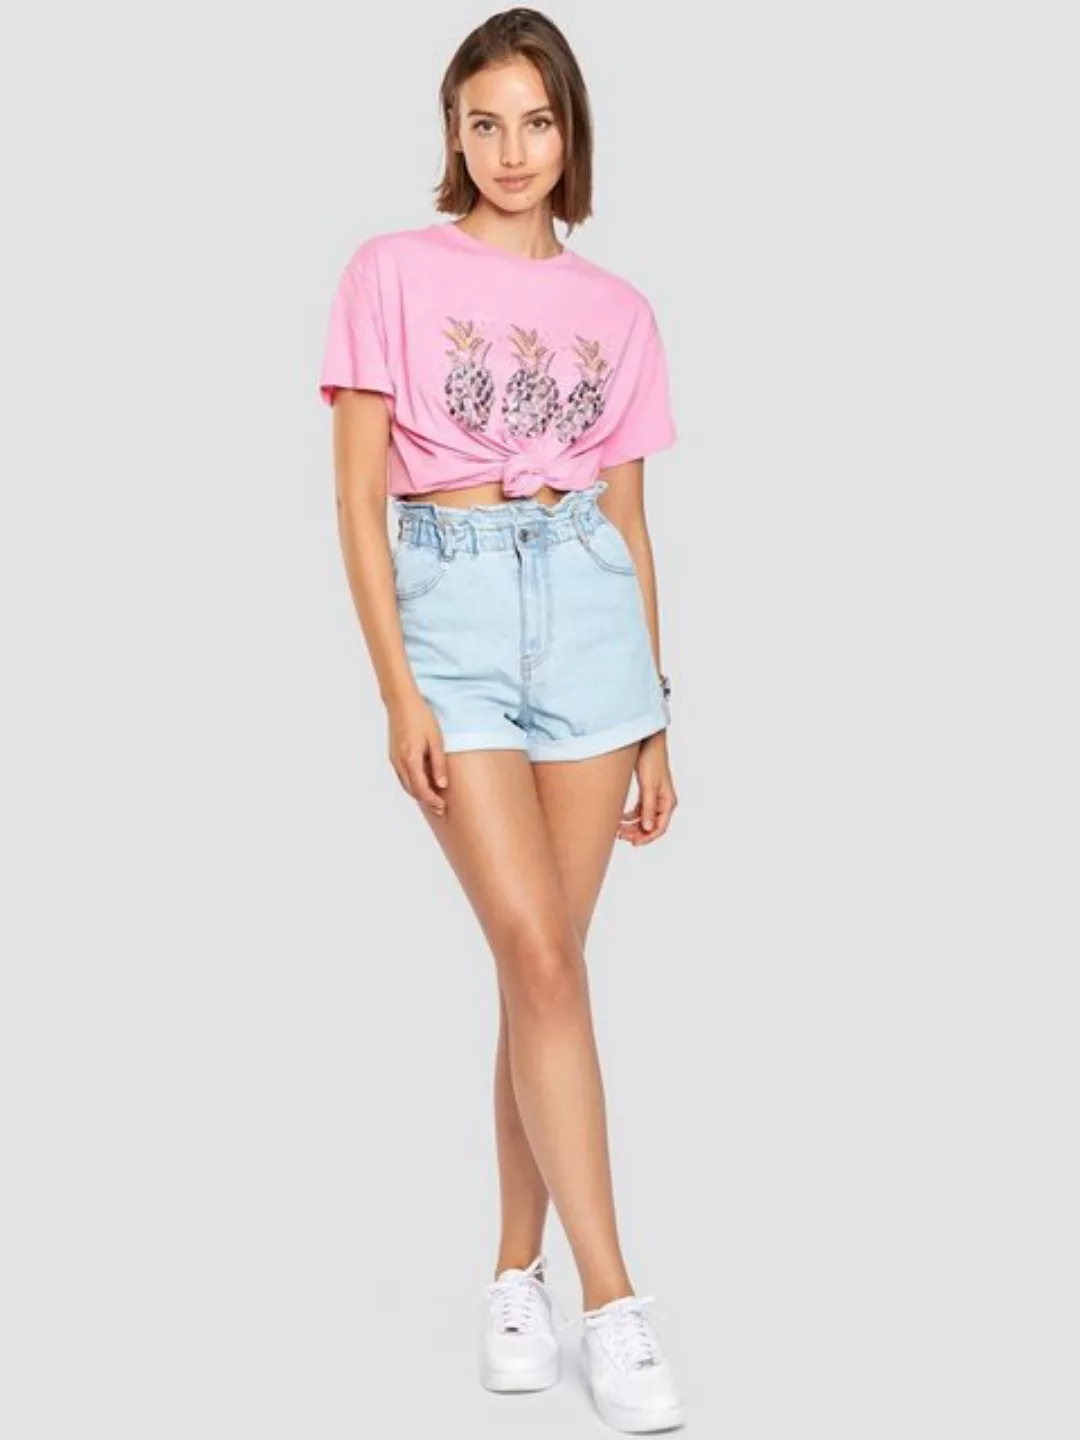 Freshlions T-Shirt T-Shirt Ananas rosa S Pailletten günstig online kaufen